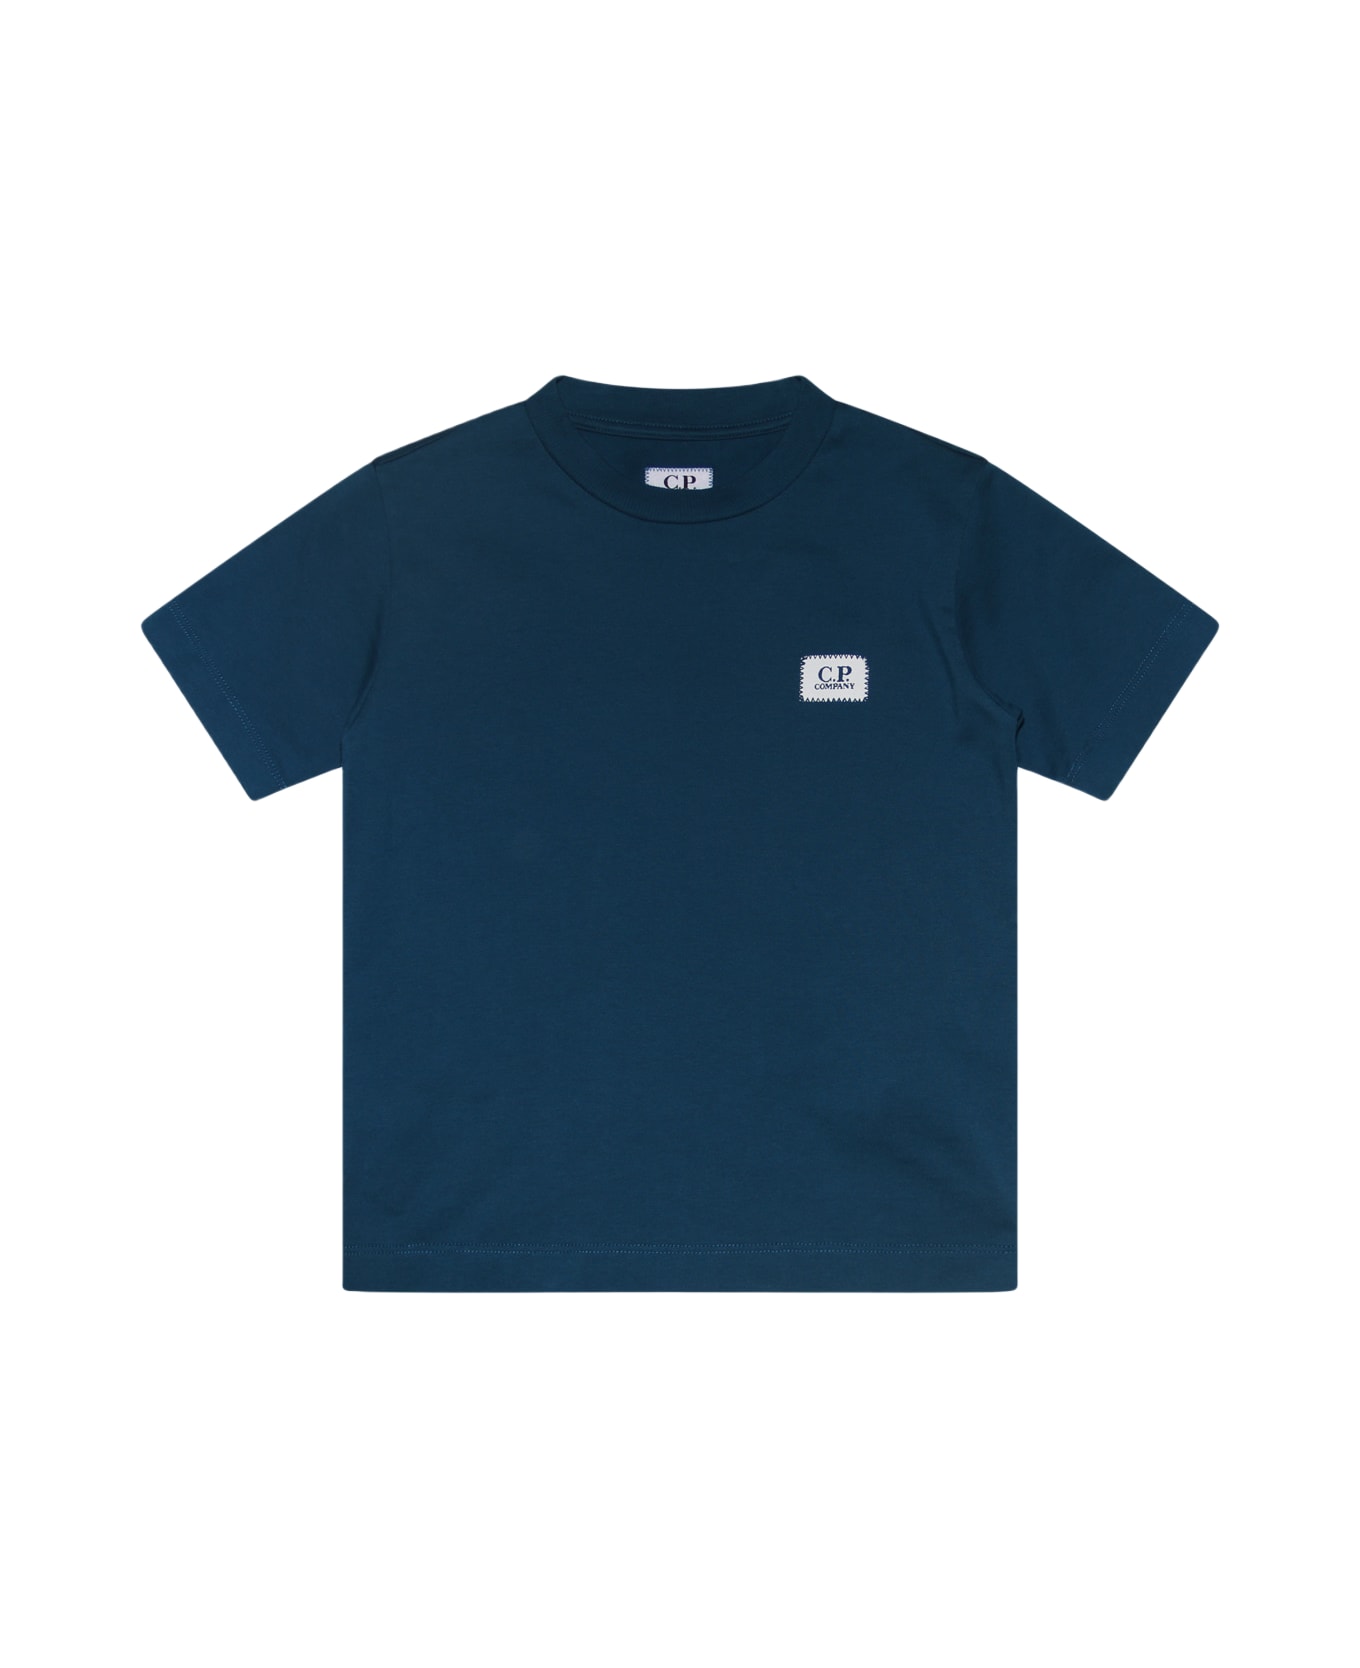 C.P. Company Blue Cotton T-shirt - INK BLUE